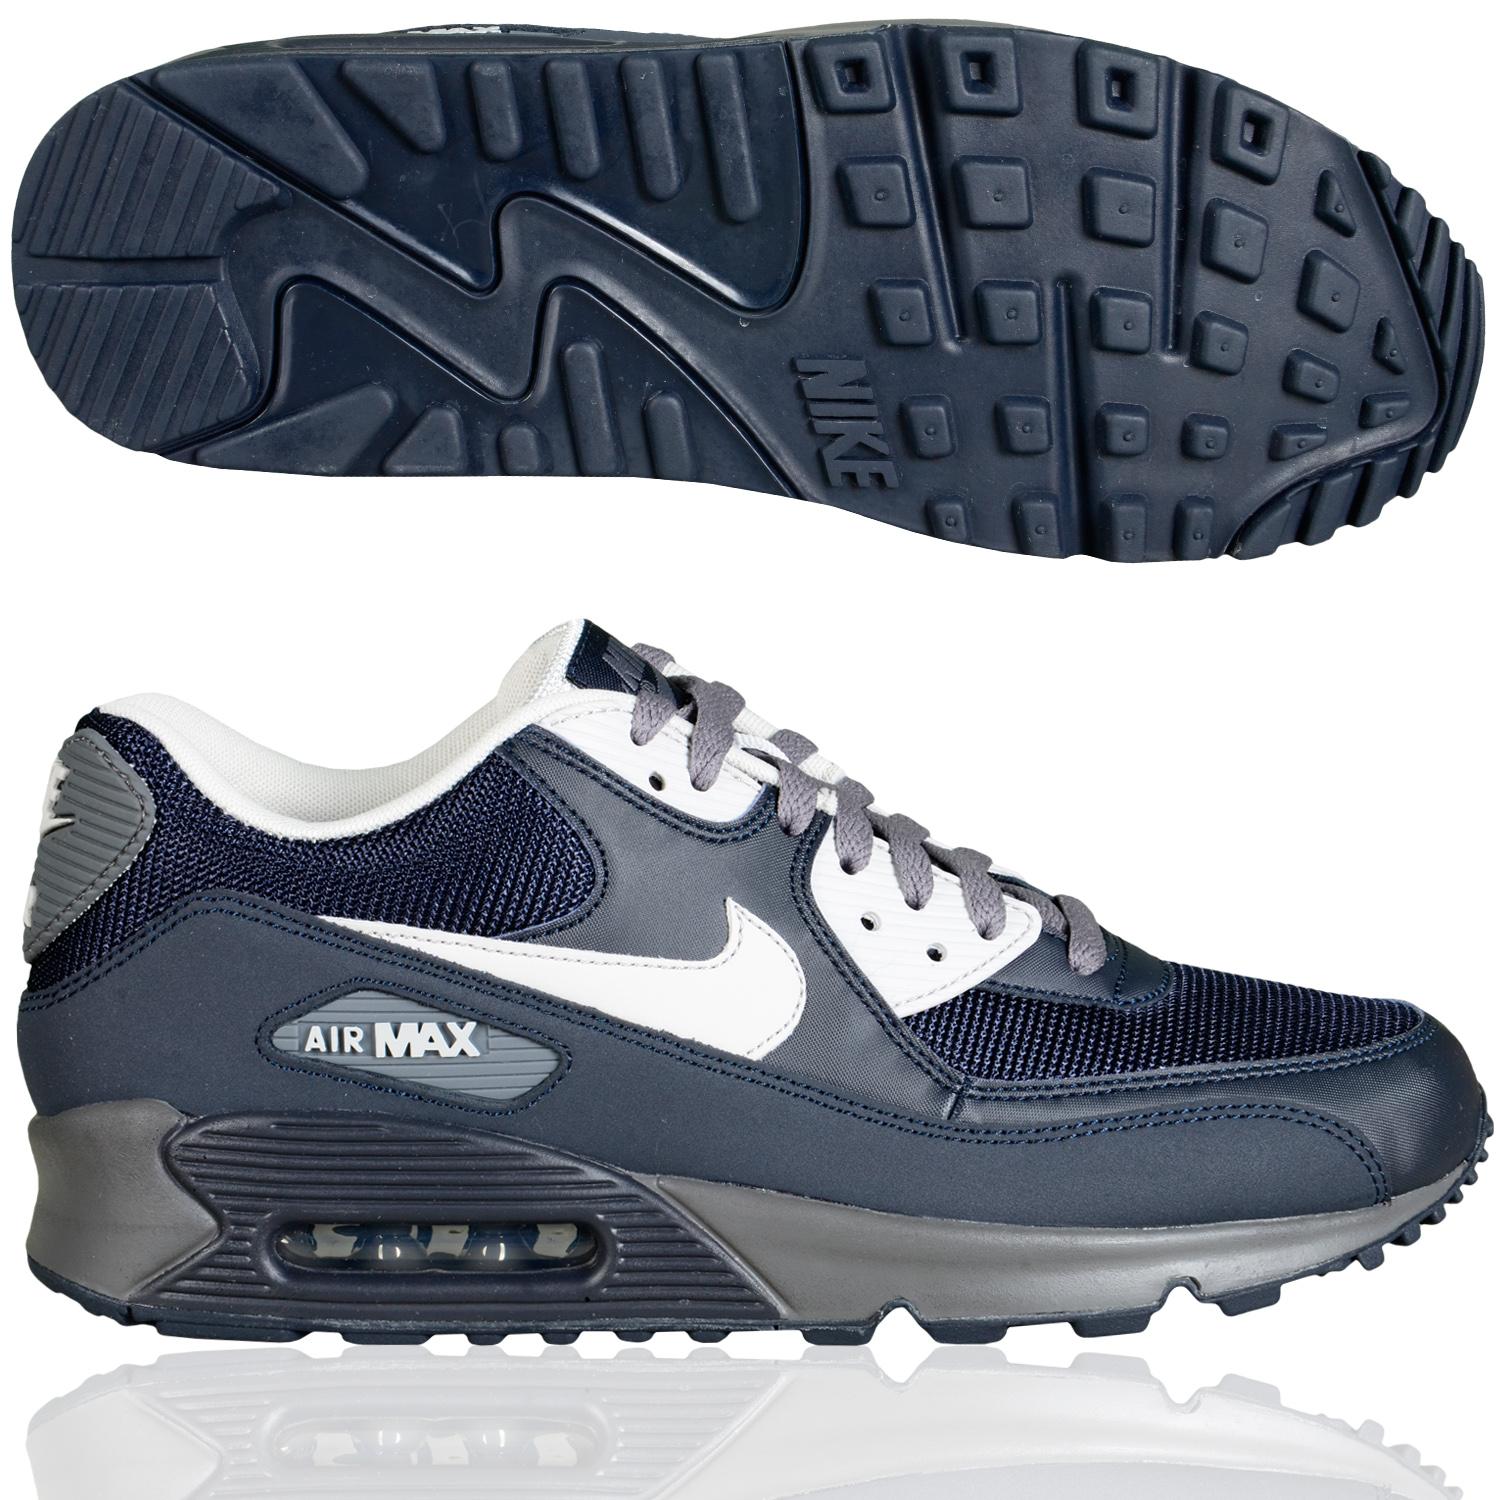 Foto Nike Shoe Air Max 90 Essential Hombres La Zapatilla De Deporte Bajo... foto 386669